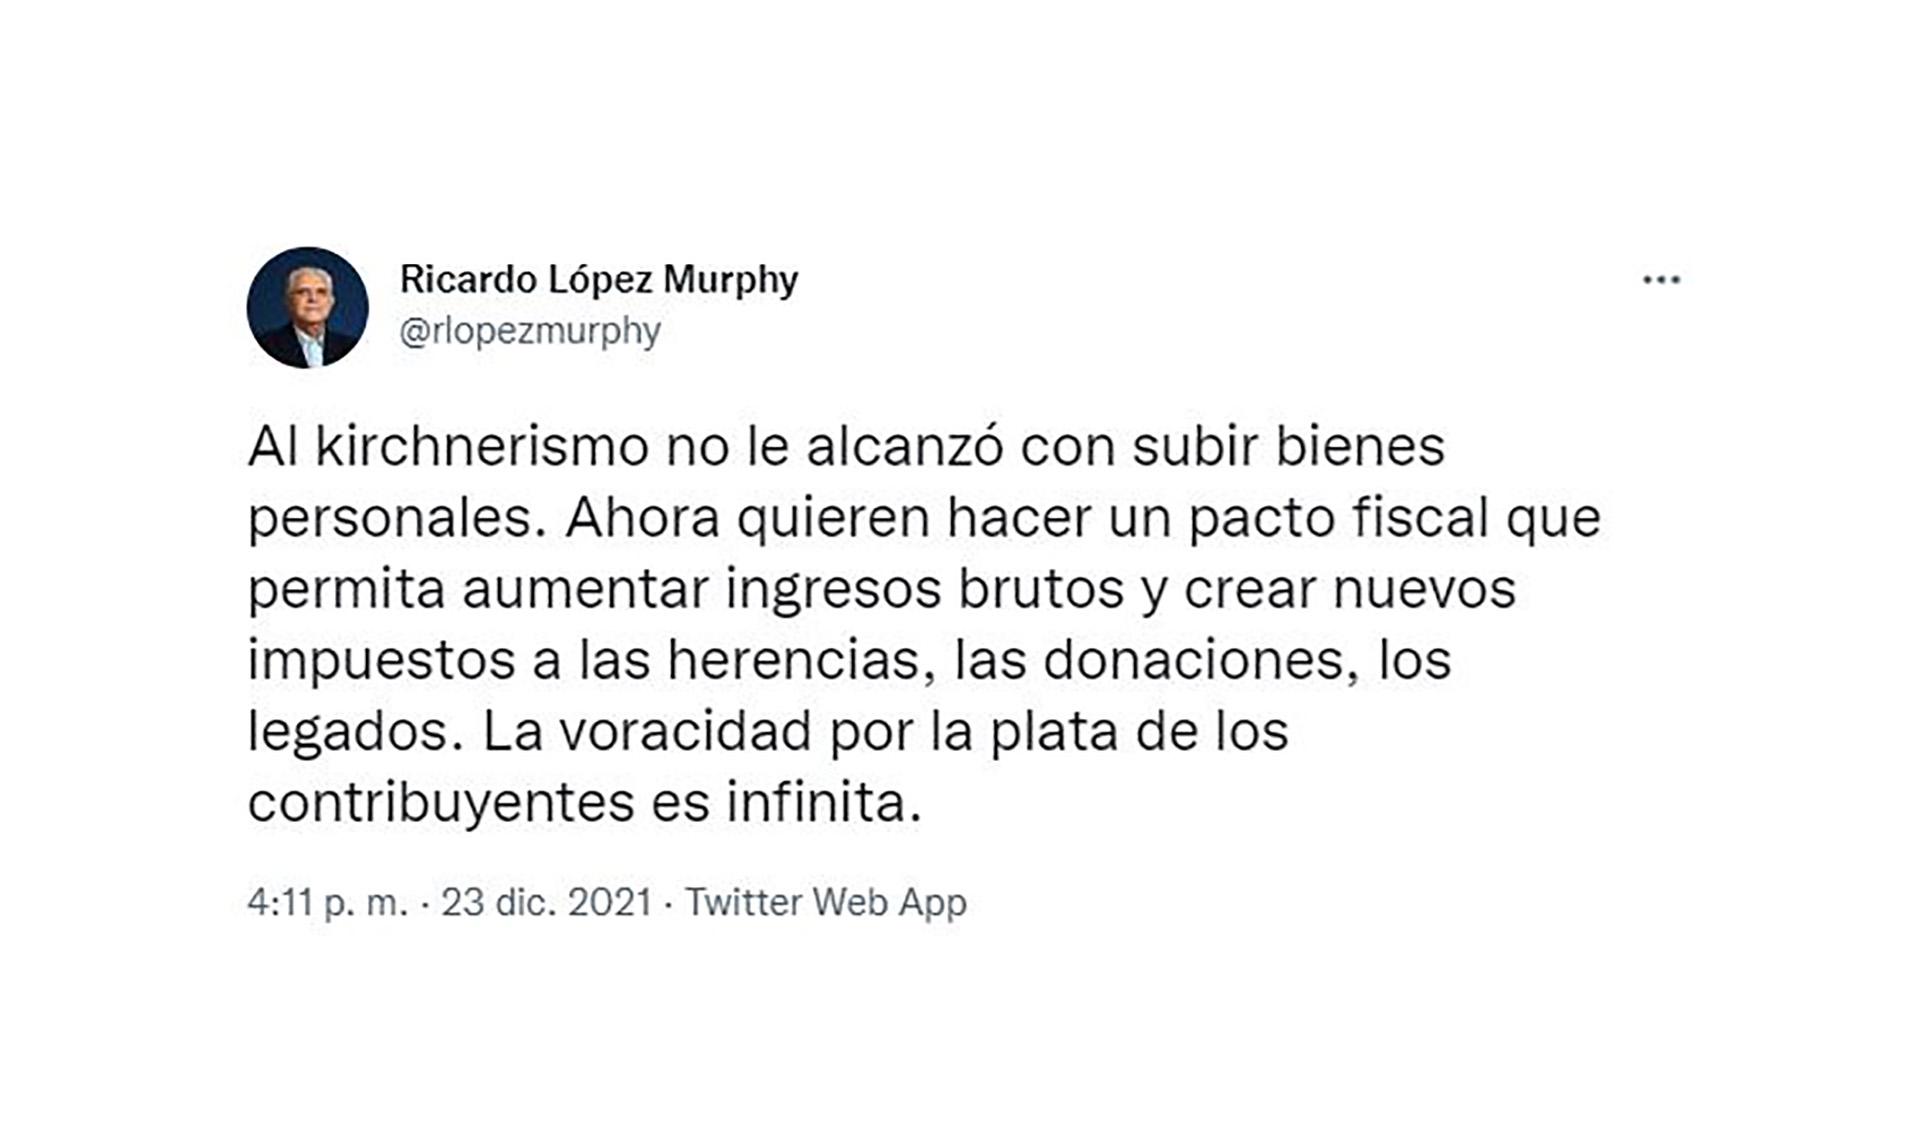 El tuit de López Murphy contra la "voracidad fiscal"